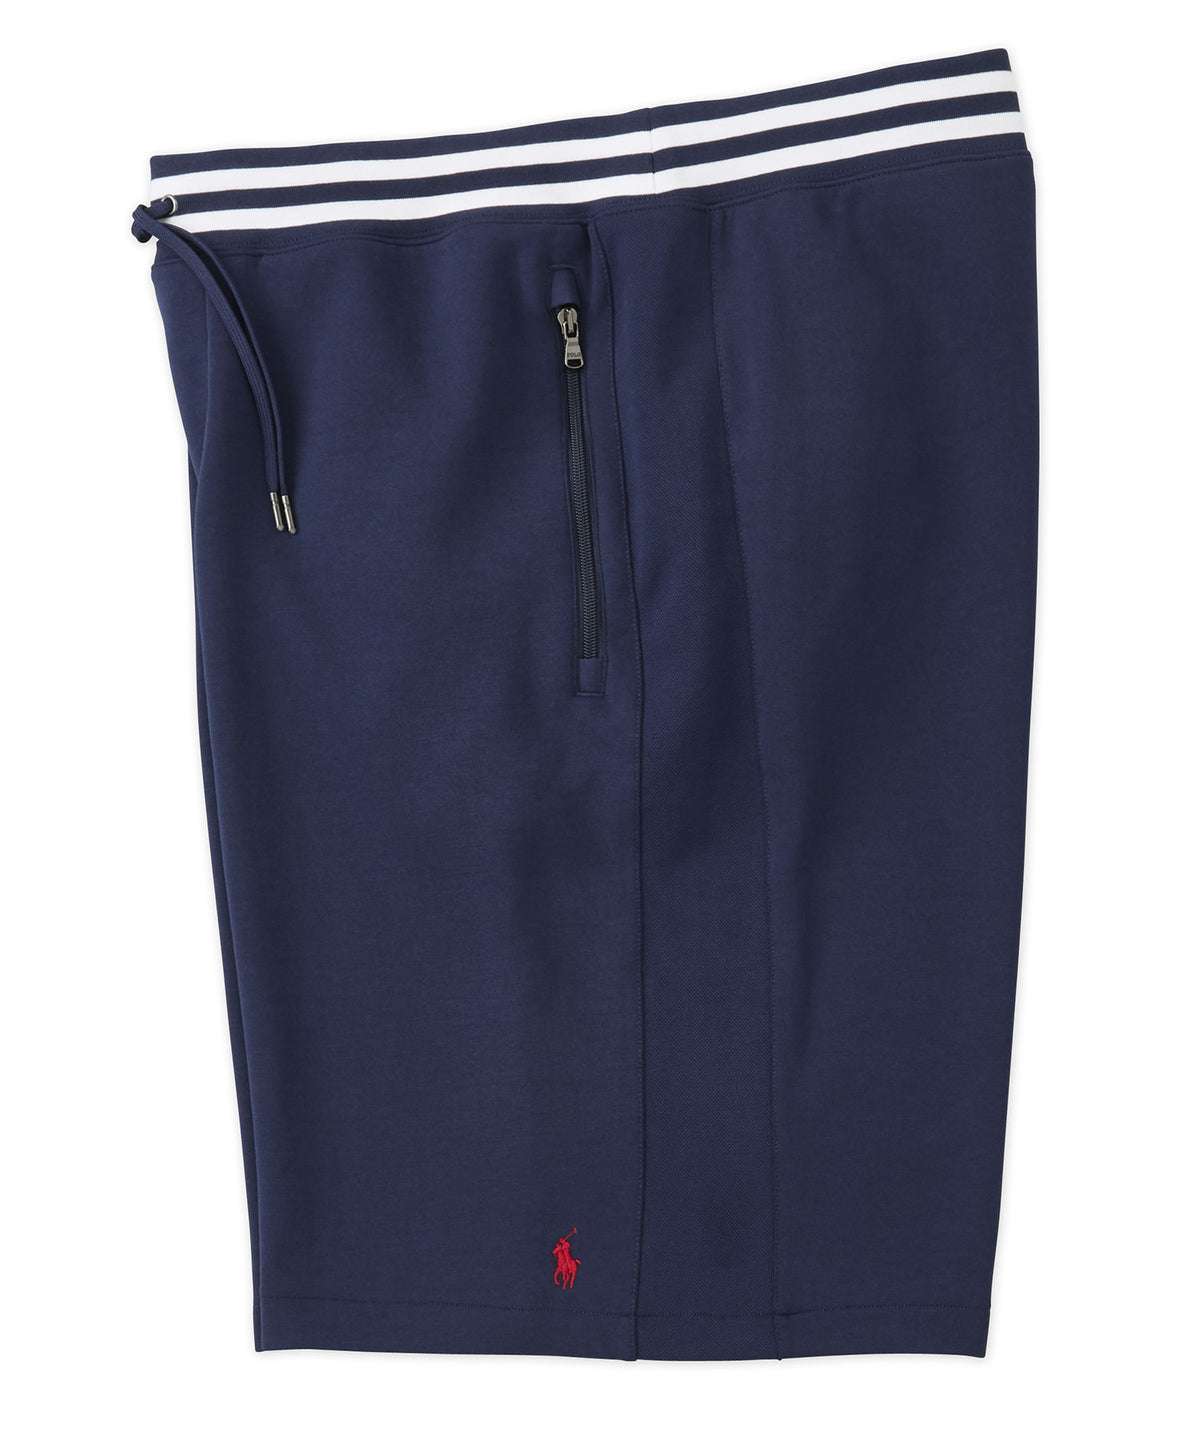 Pantaloncini tecnici Polo Ralph Lauren in maglia doppia maglia, Men's Big & Tall